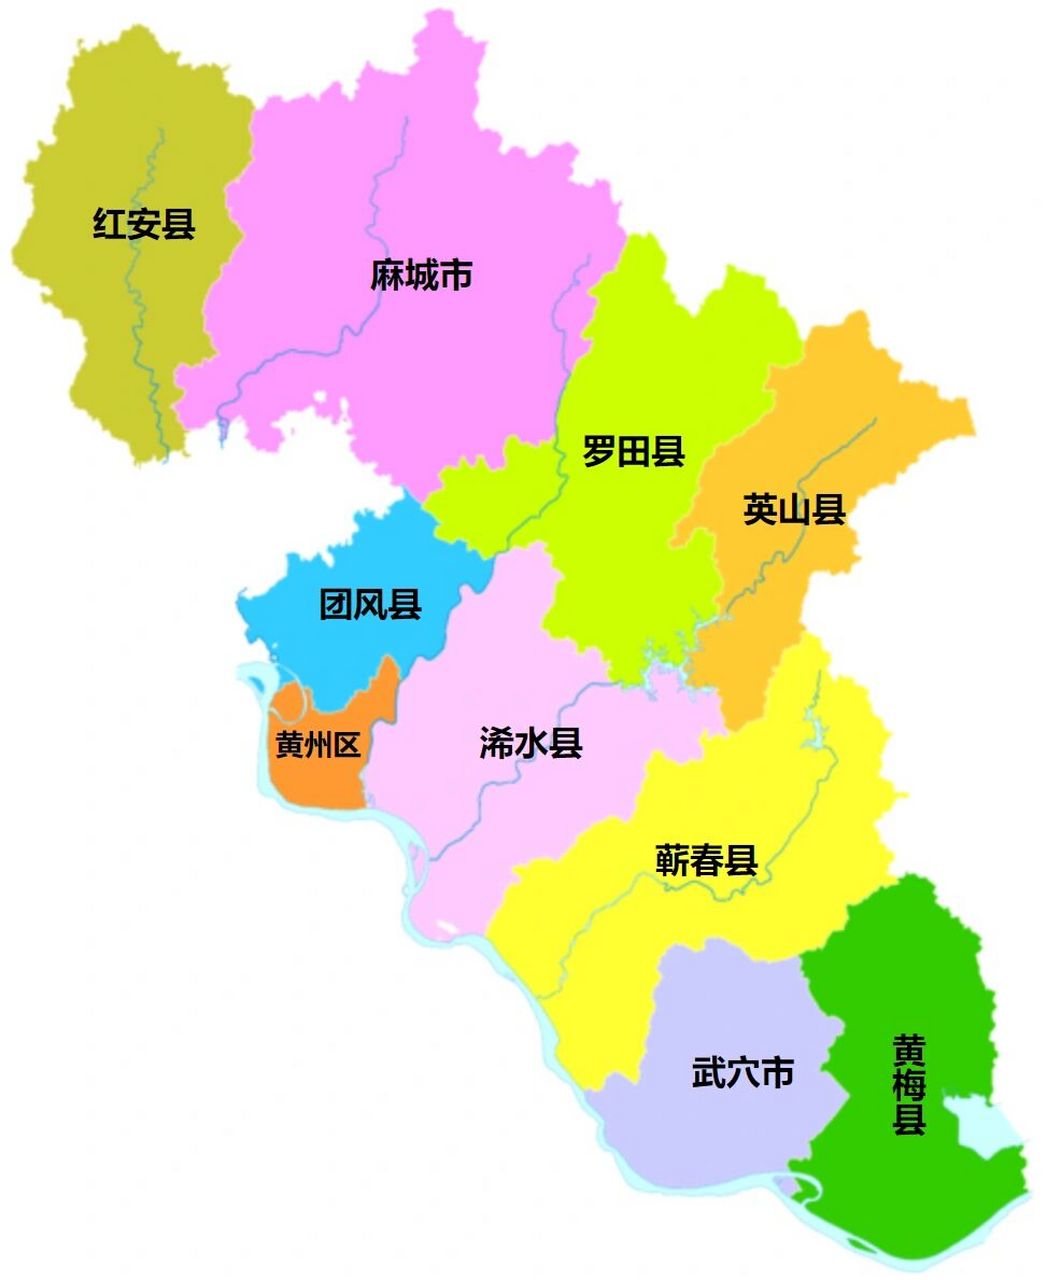 黄冈全市划分为 1个区:黄州区 7个县:团风县,浠水县,罗田县,英山县